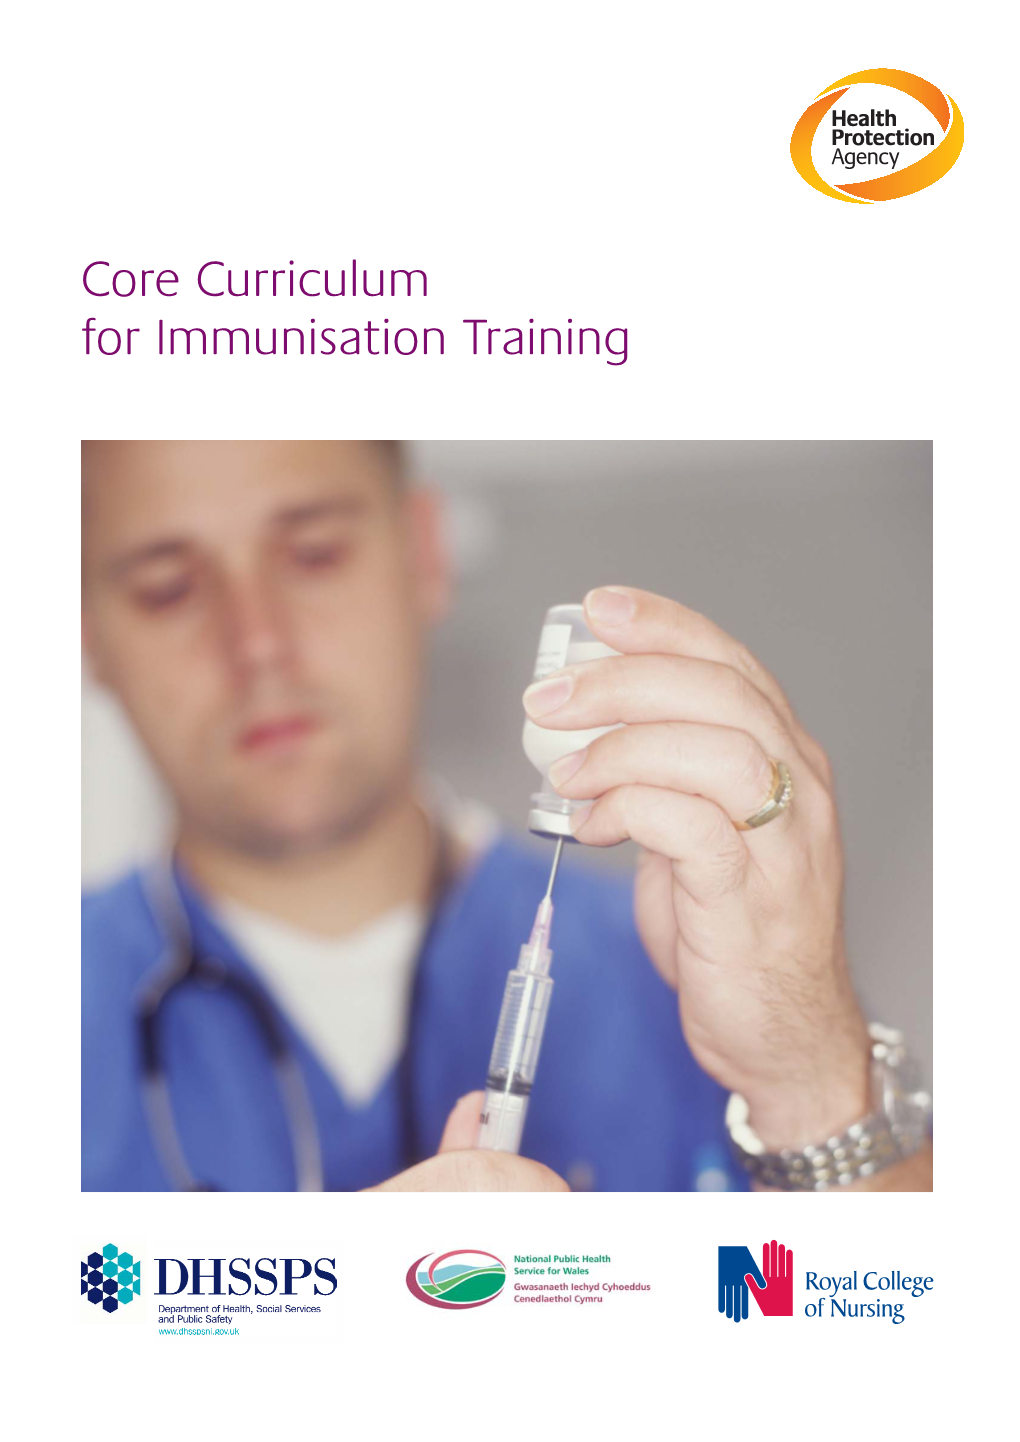 Core Curriculum for Immunisation Training CORE CURRICULUM for IMMUNISATION TRAINING